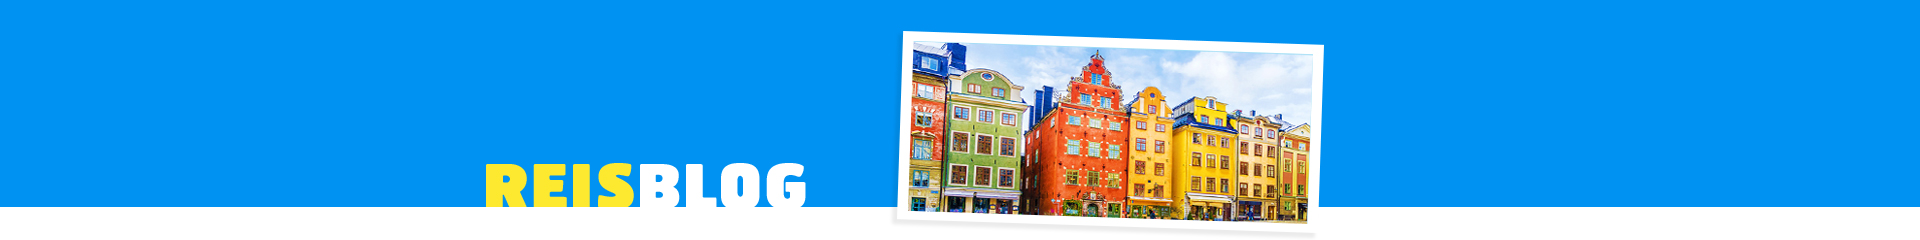 Kleurrijke huizen in Stockholm